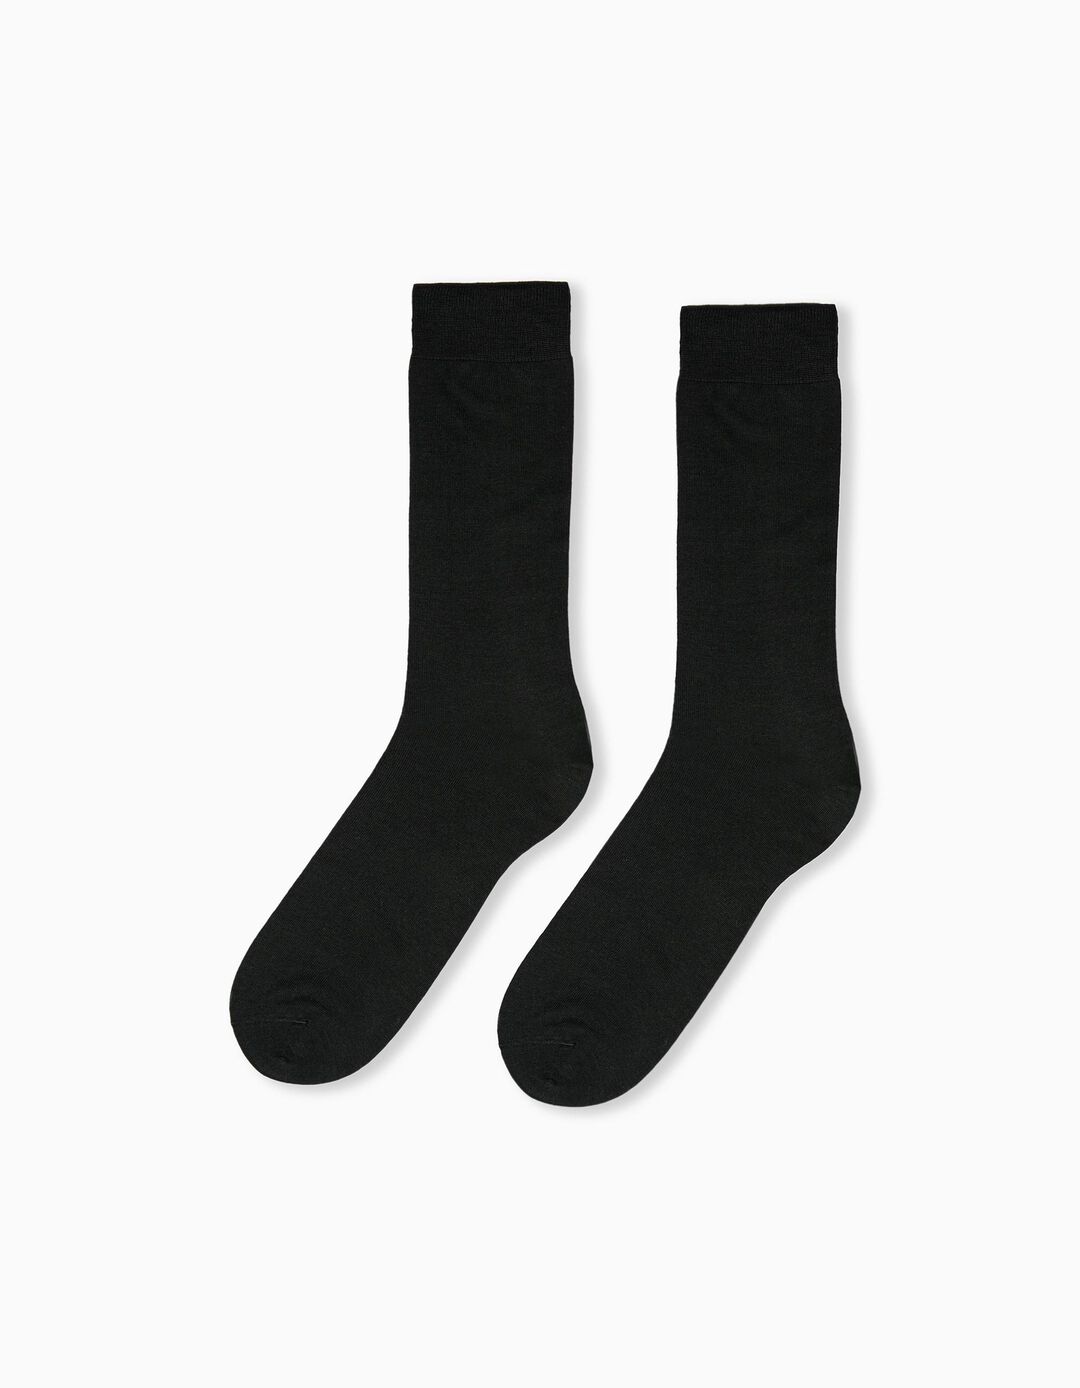 Cotton Socks for Men, Black